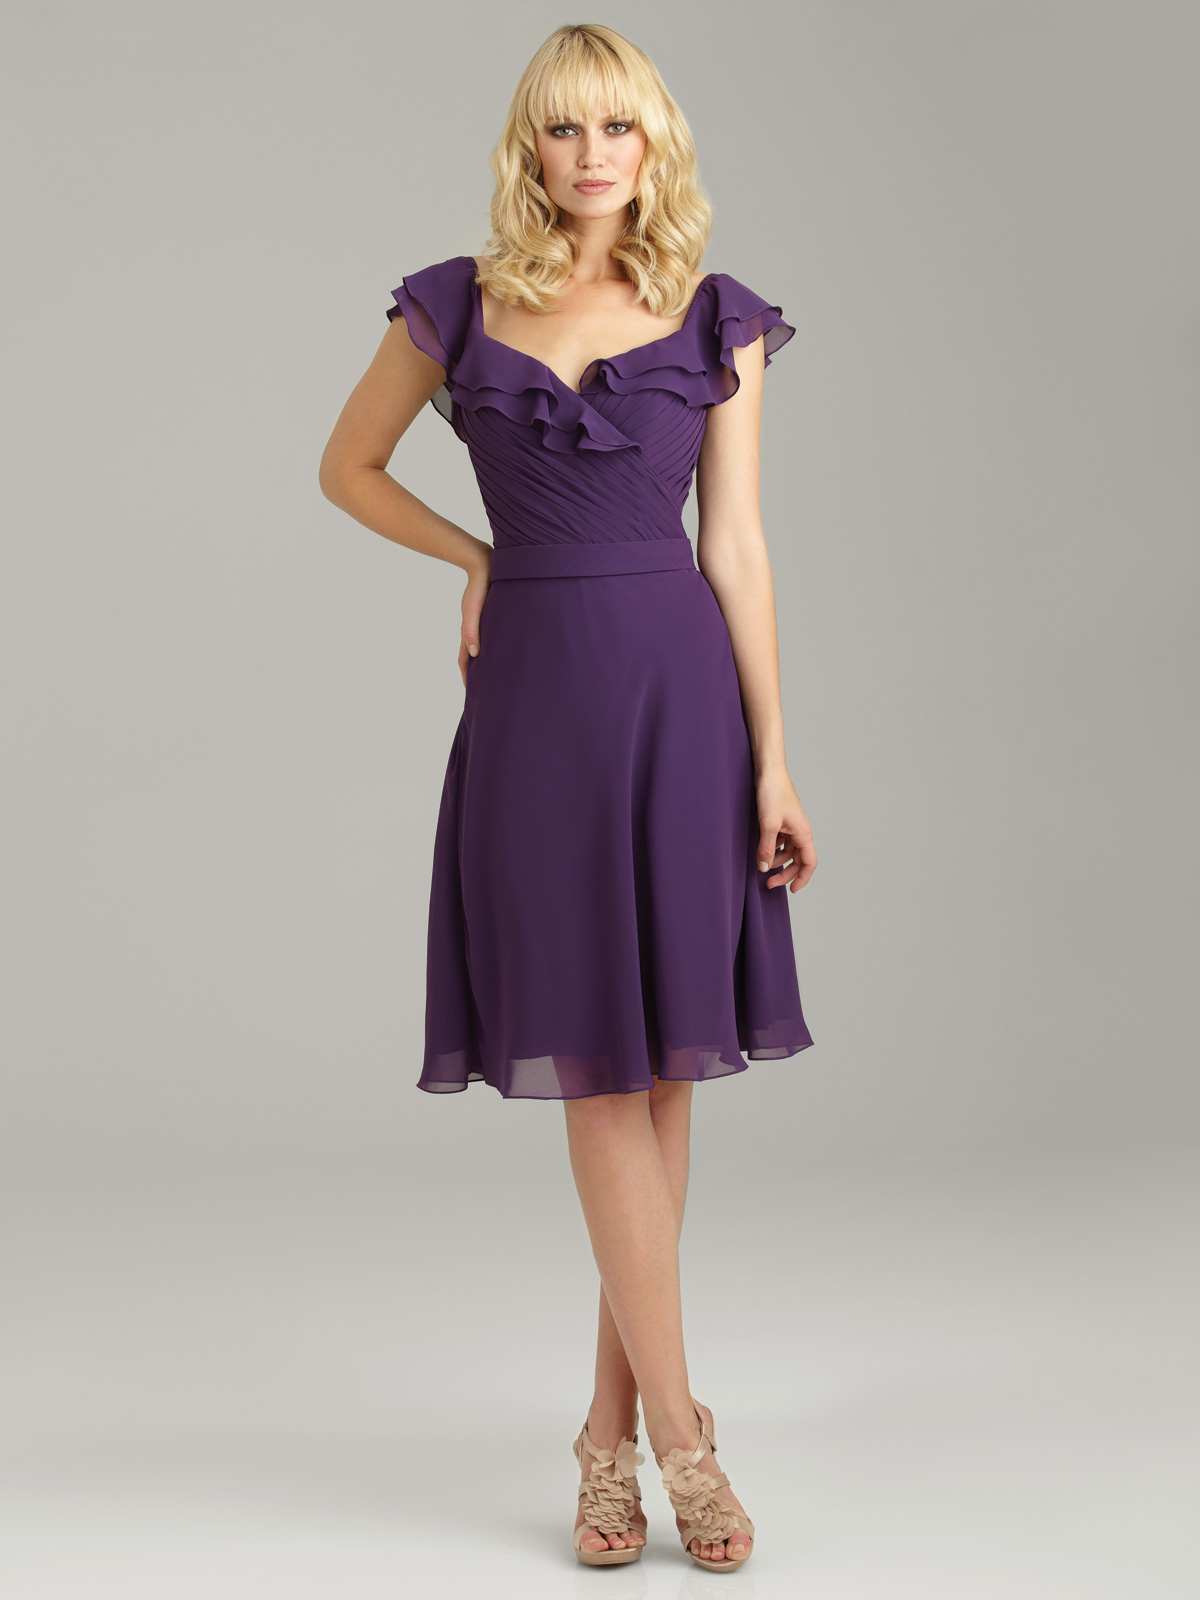 Purple chiffon bridesmaid dress